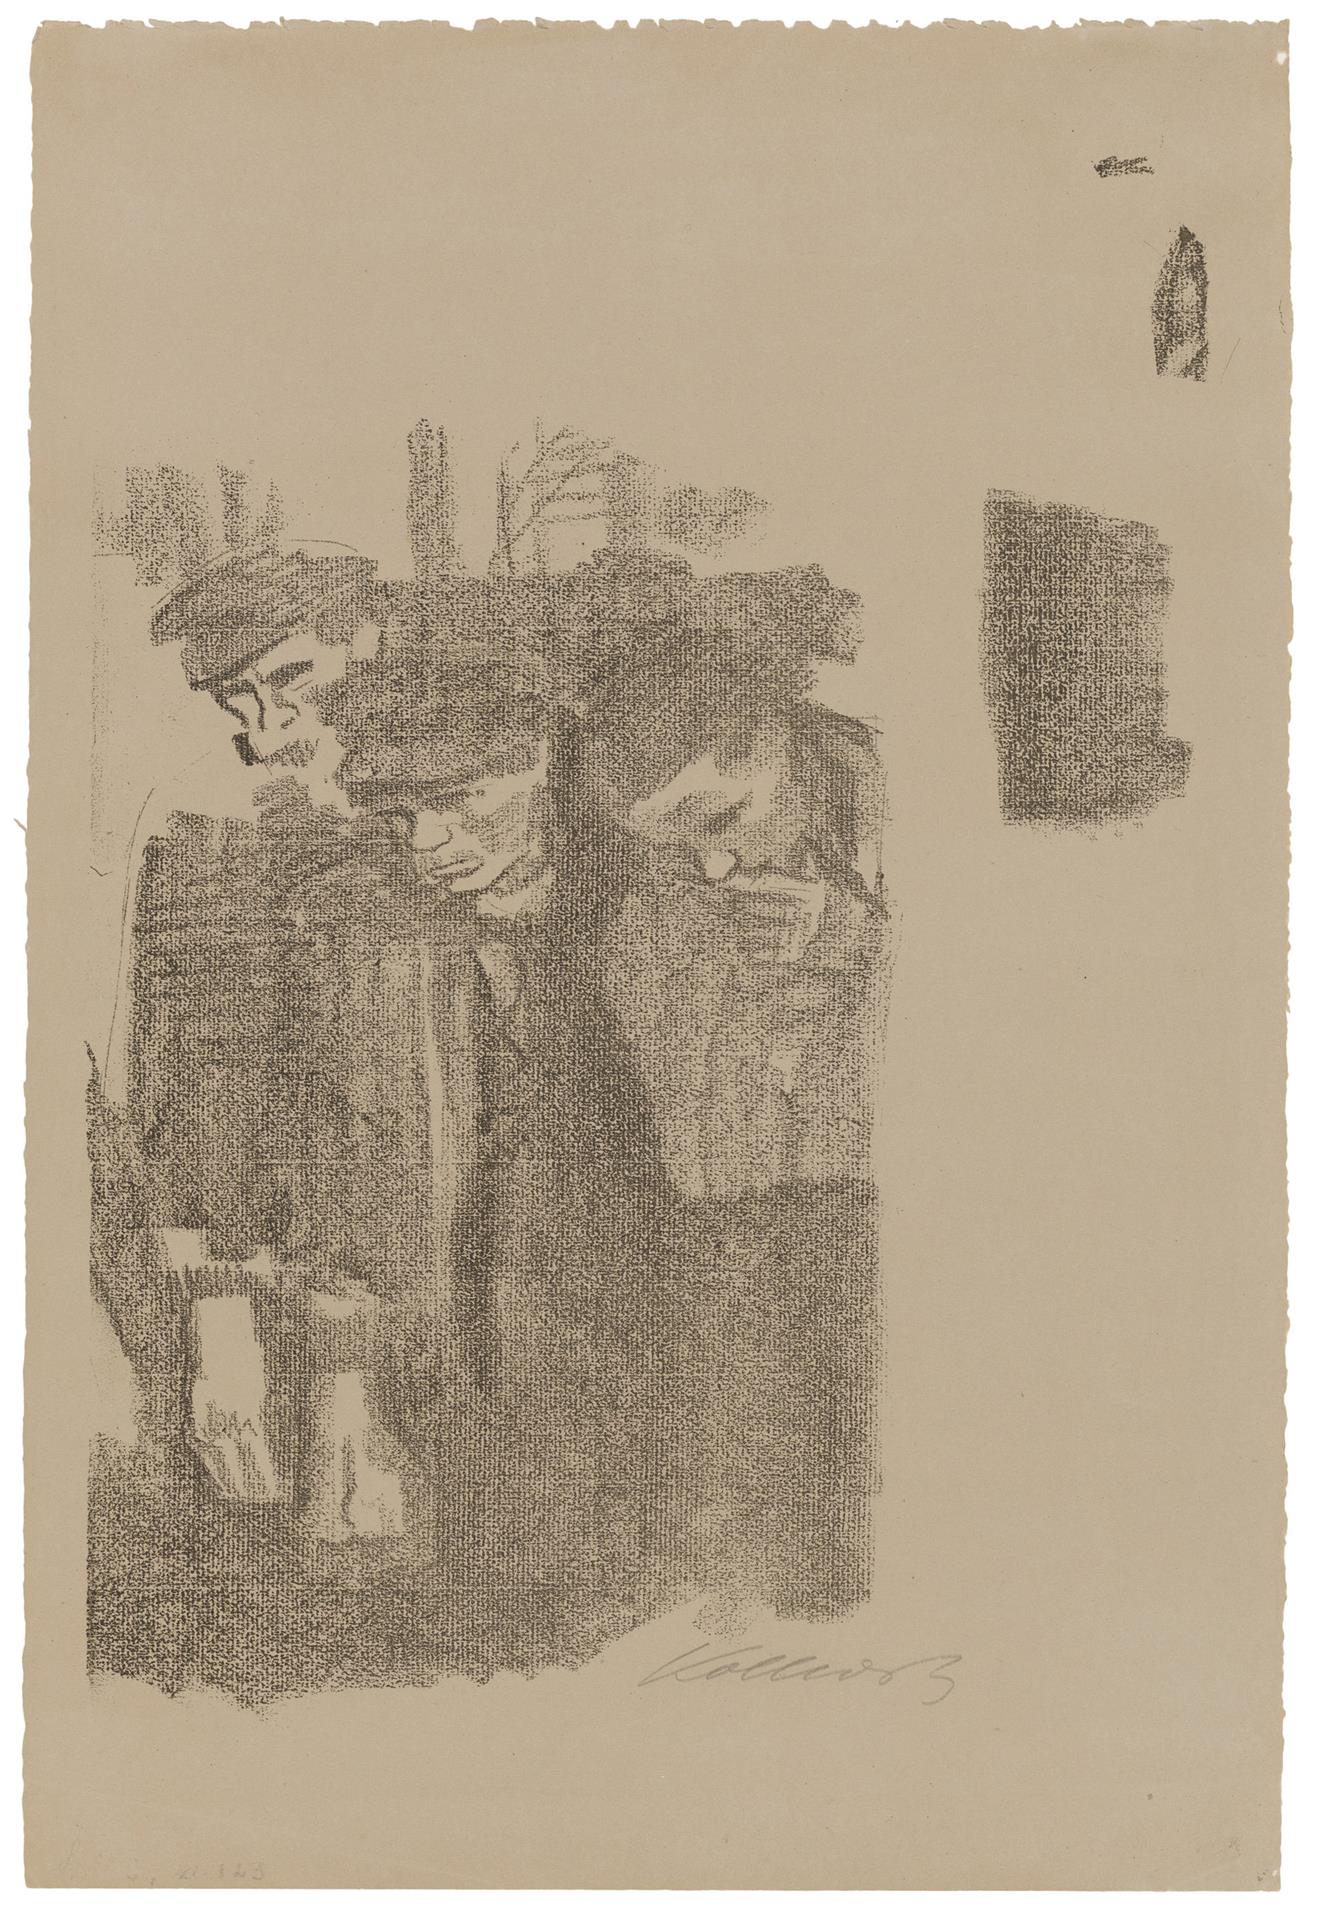 Käthe Kollwitz, Märzfriedhof, Erste Fassung, 1913, Kreidelithographie (Umdruck von einer Zeichnung auf geripptem Bütten), Kn 127